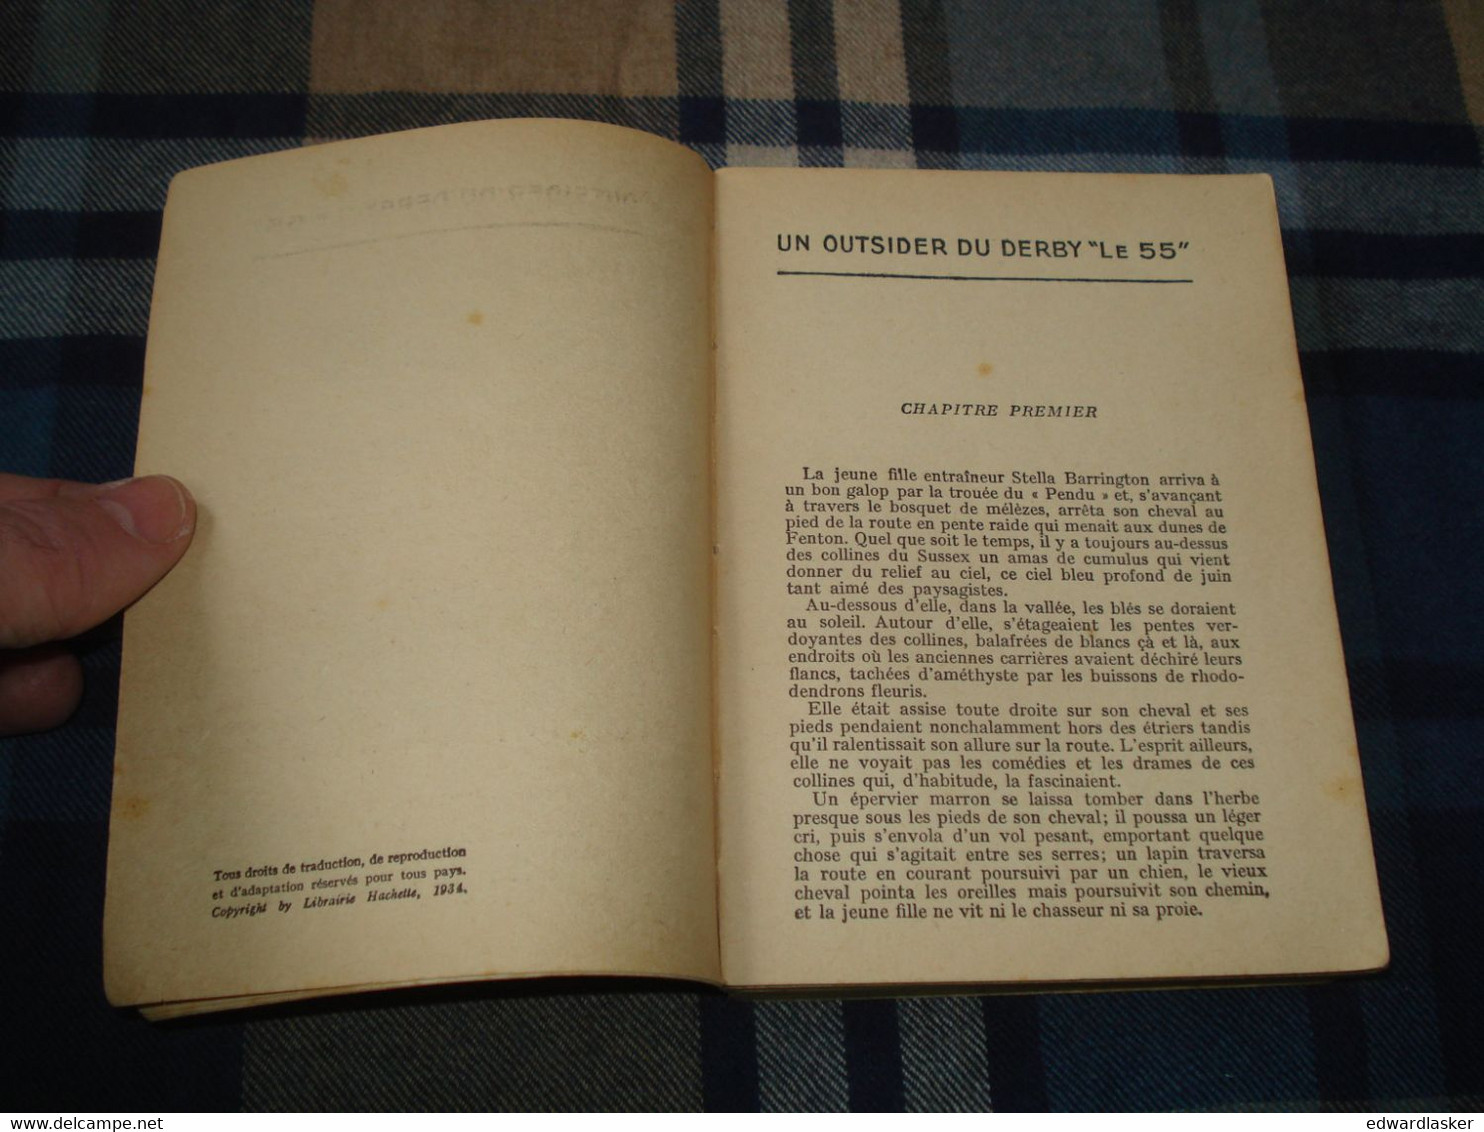 BIBLIOTHEQUE De La JEUNESSE : Le 55 /Edgar Wallace - (c) 1934 - Bibliothèque De La Jeunesse